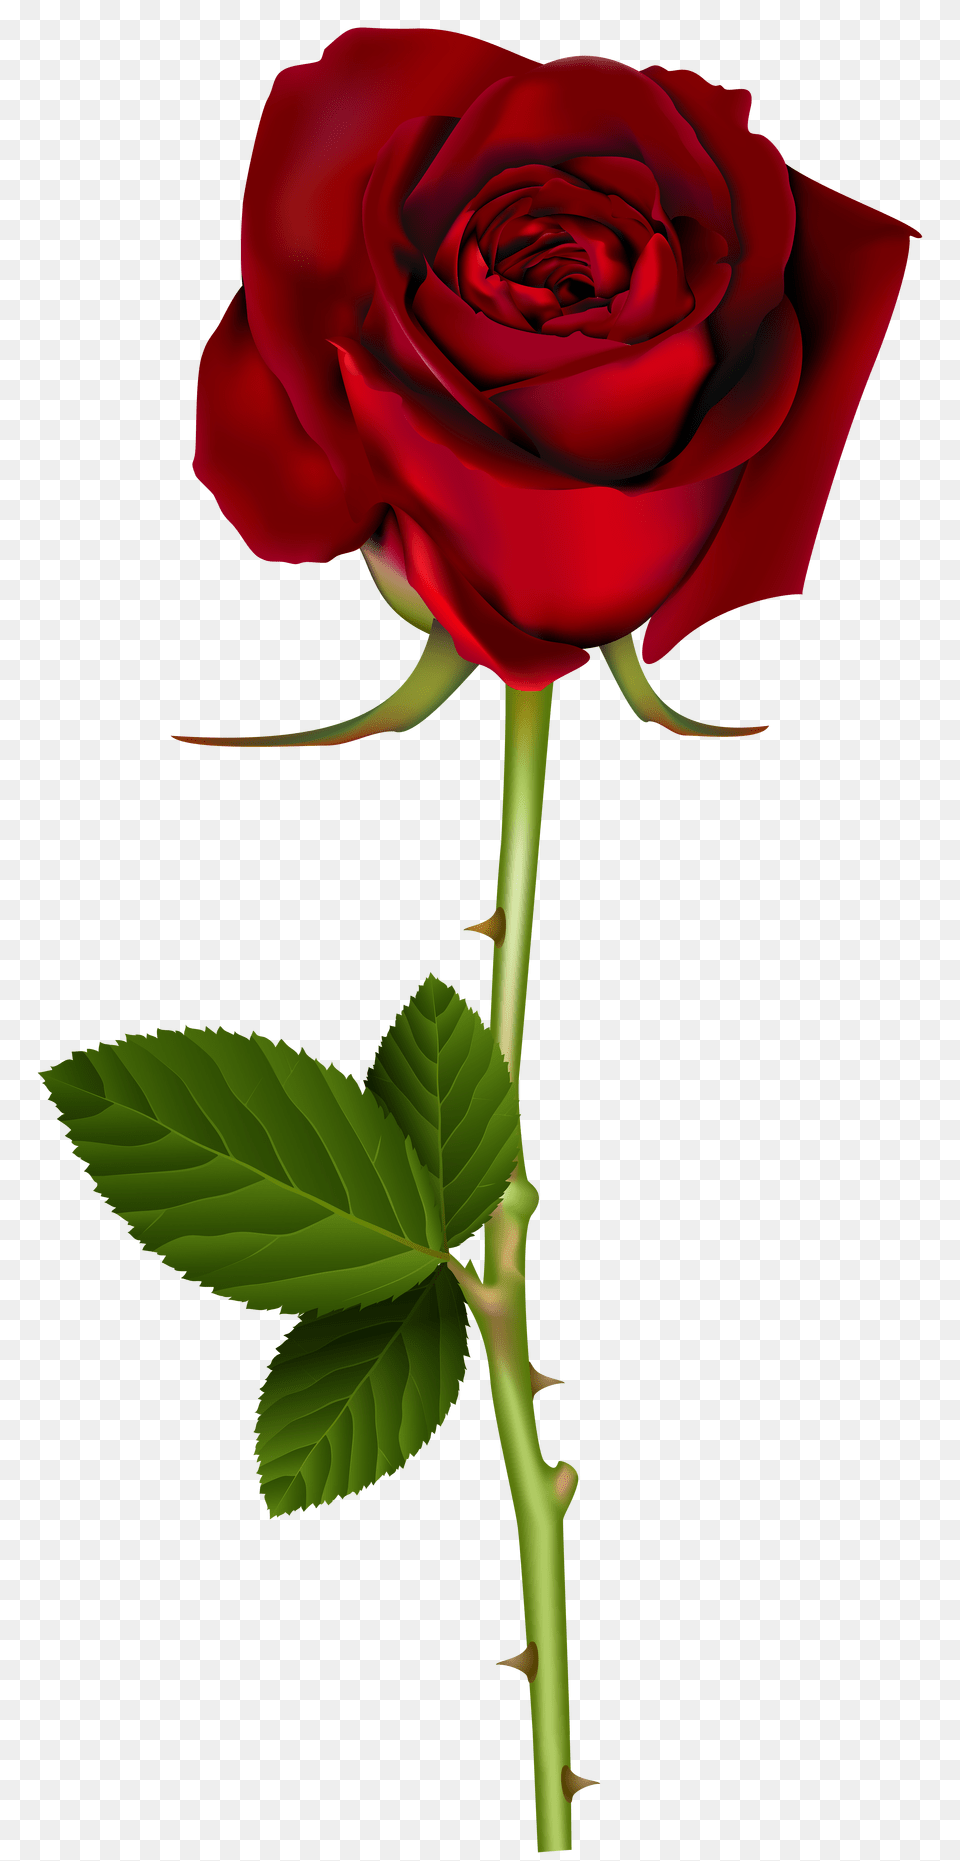 Red Rose Transparent, Flower, Plant Png Image